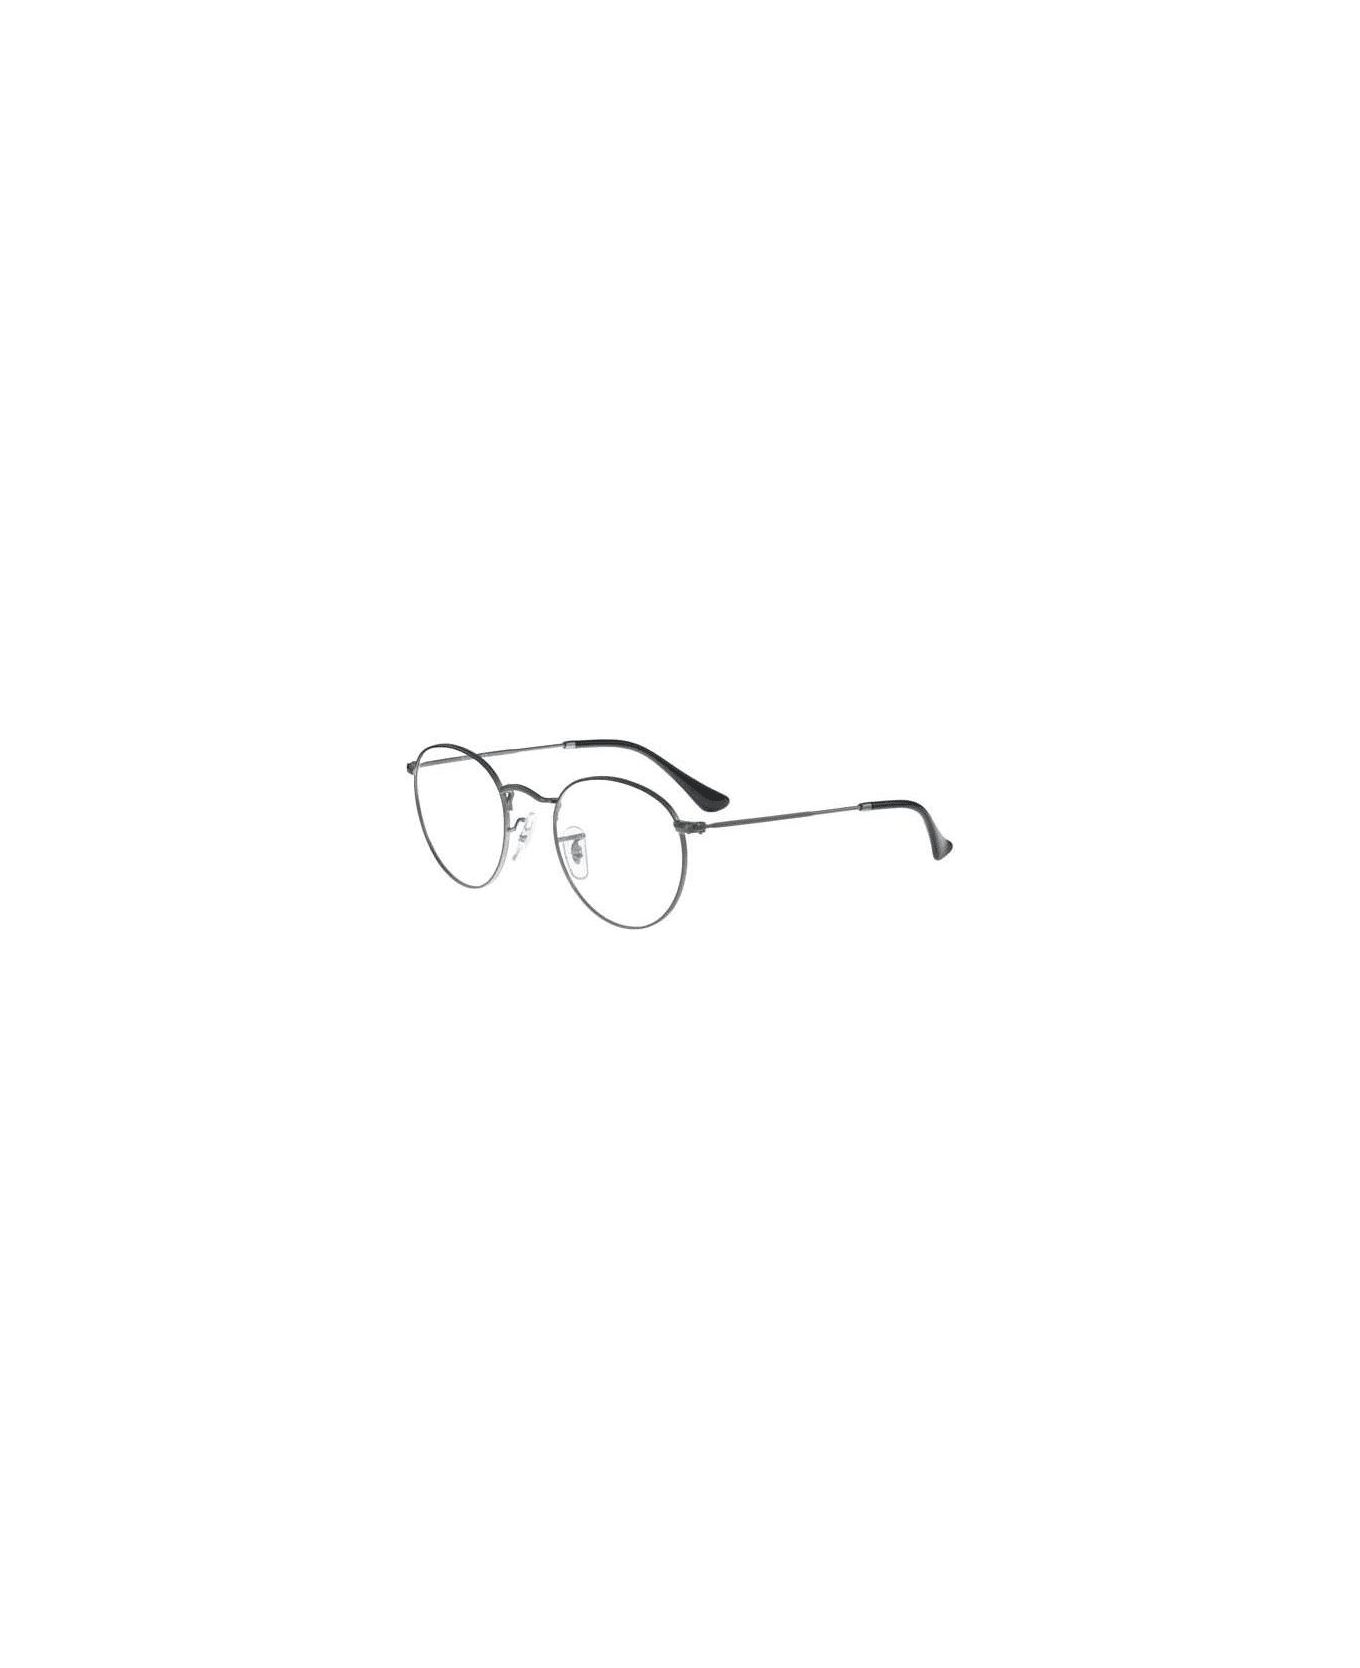 Ray-Ban Round Metal Rx 3447v Glasses - Argento アイウェア